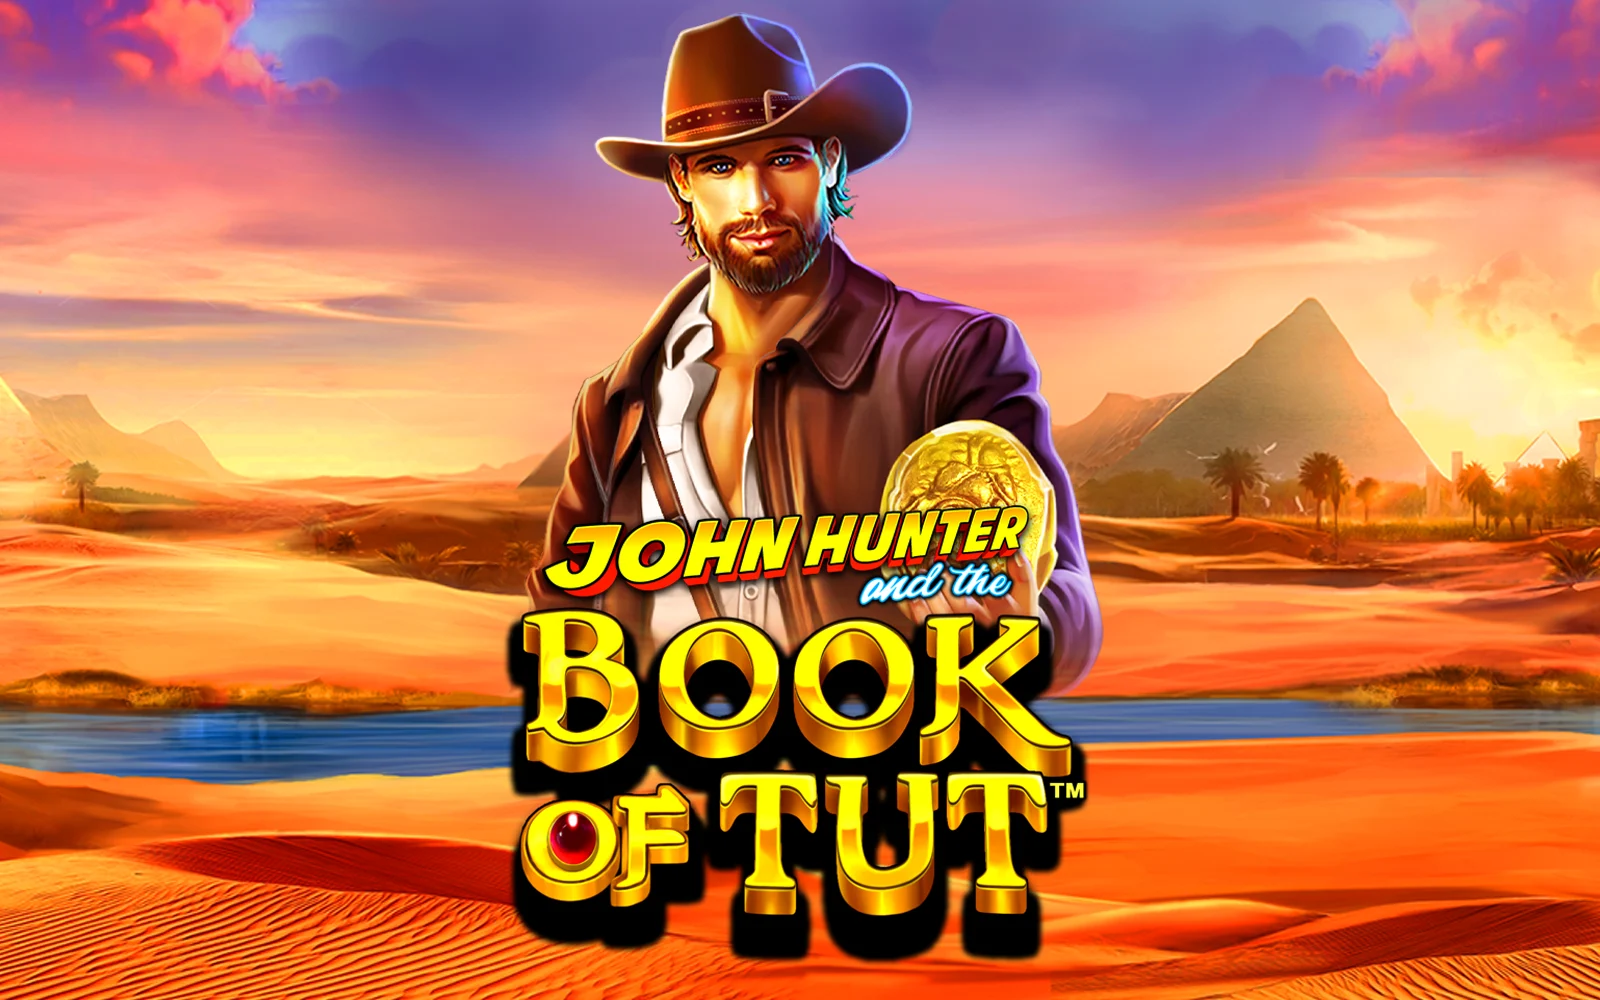 Jouer à John Hunter and the Book of Tut™ sur le casino en ligne Starcasino.be